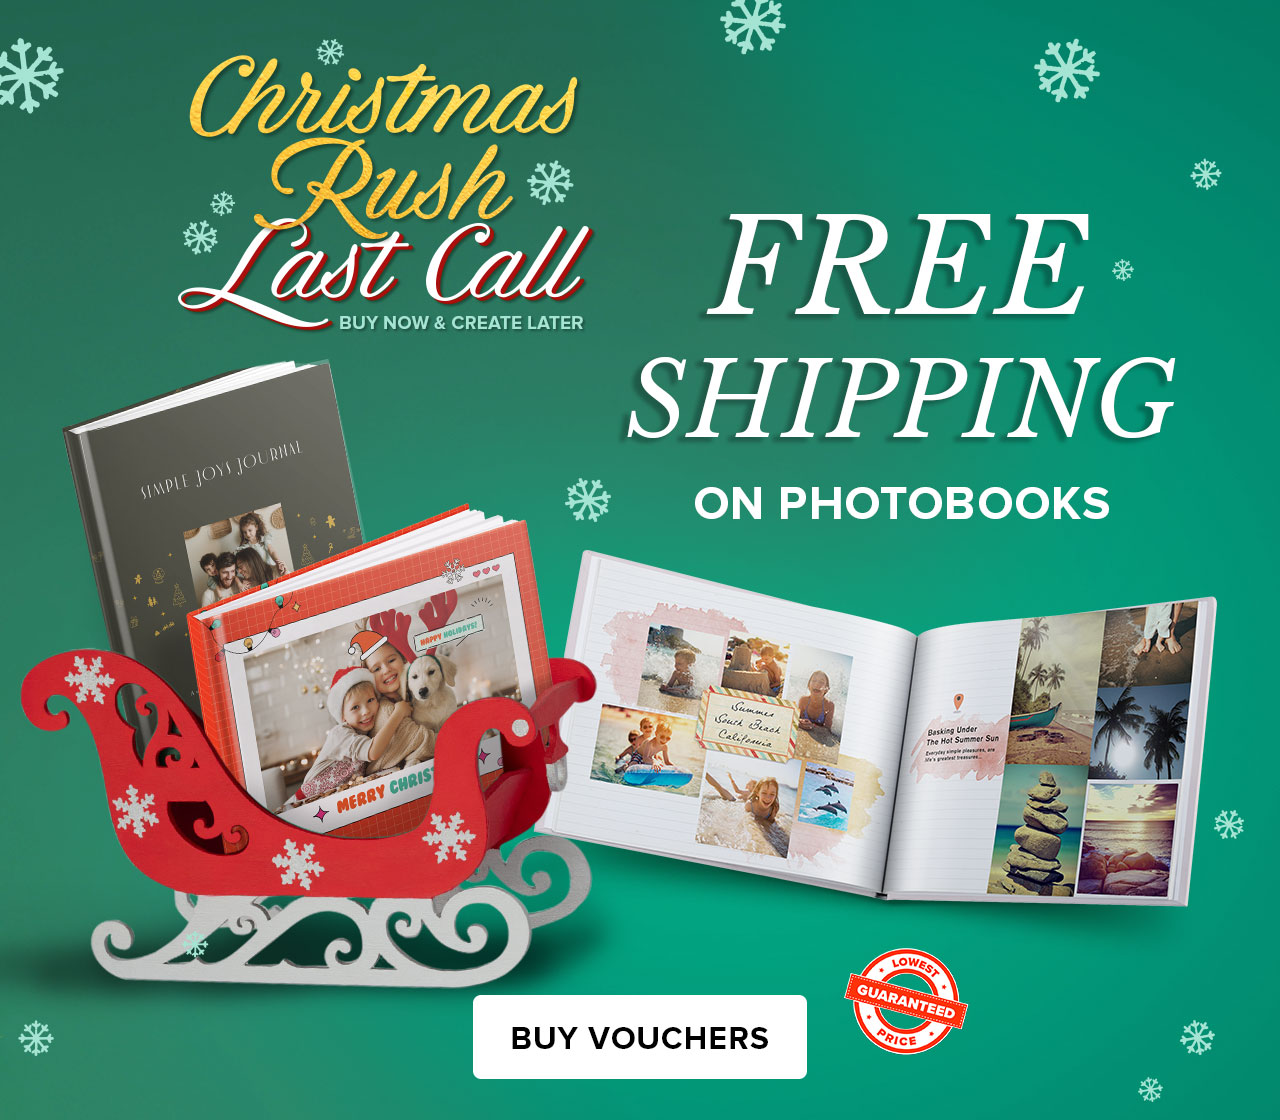 Free Shipping On Photobooks